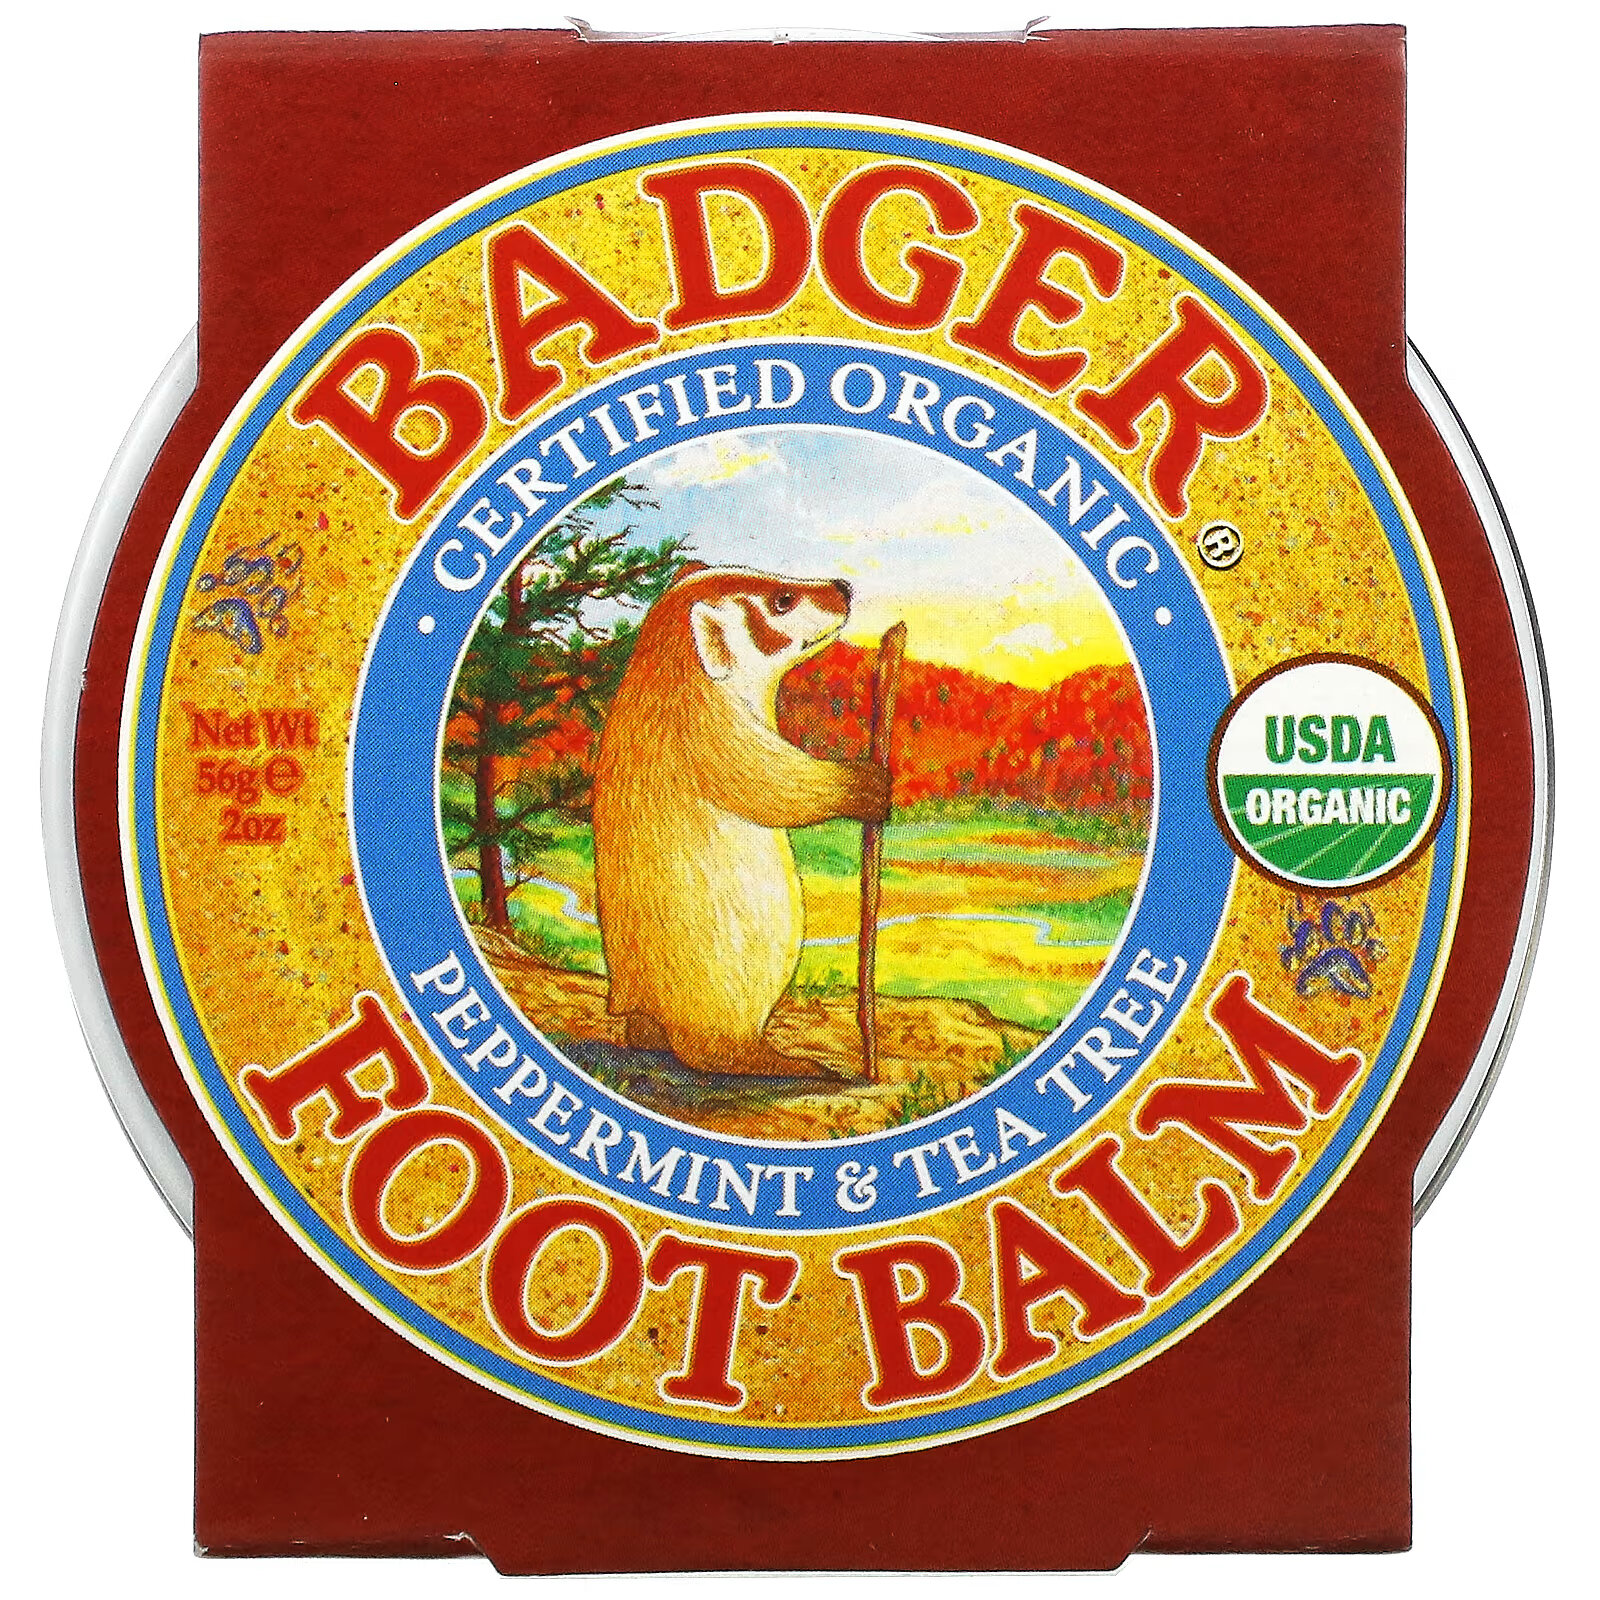 Badger Company, бальзам для ног, перечная мята и чайное дерево, 56 г (2 унции) badger company барсучий бальзам для рук 56 г 2 унции